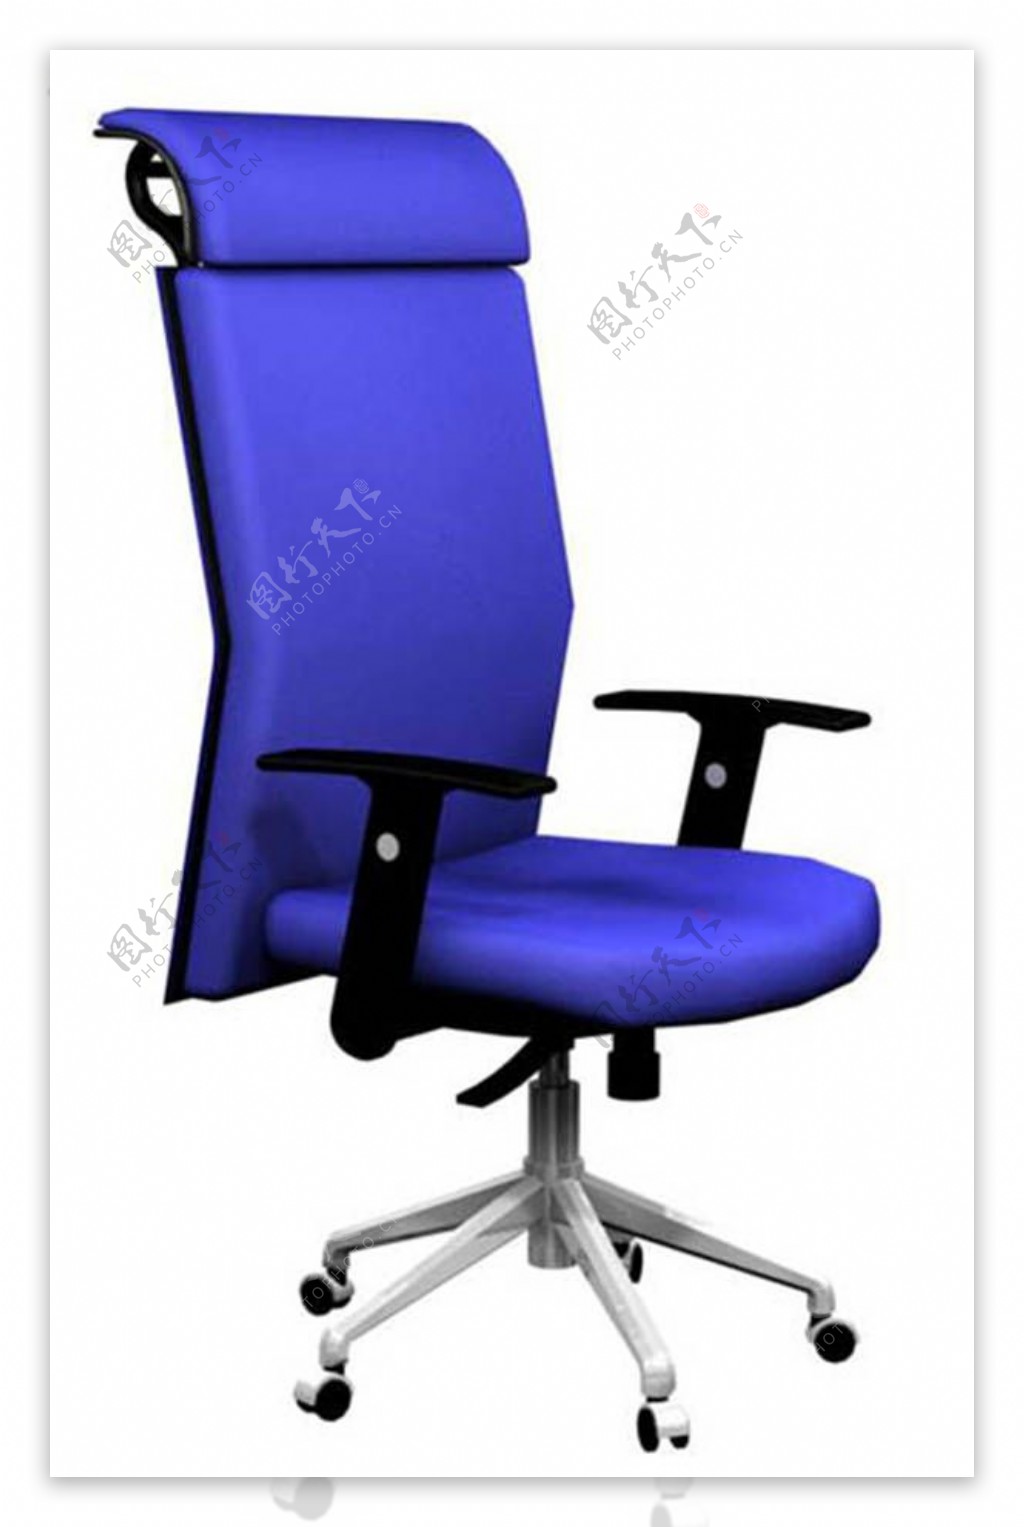 蓝色旋转滑椅家具装饰模具模型